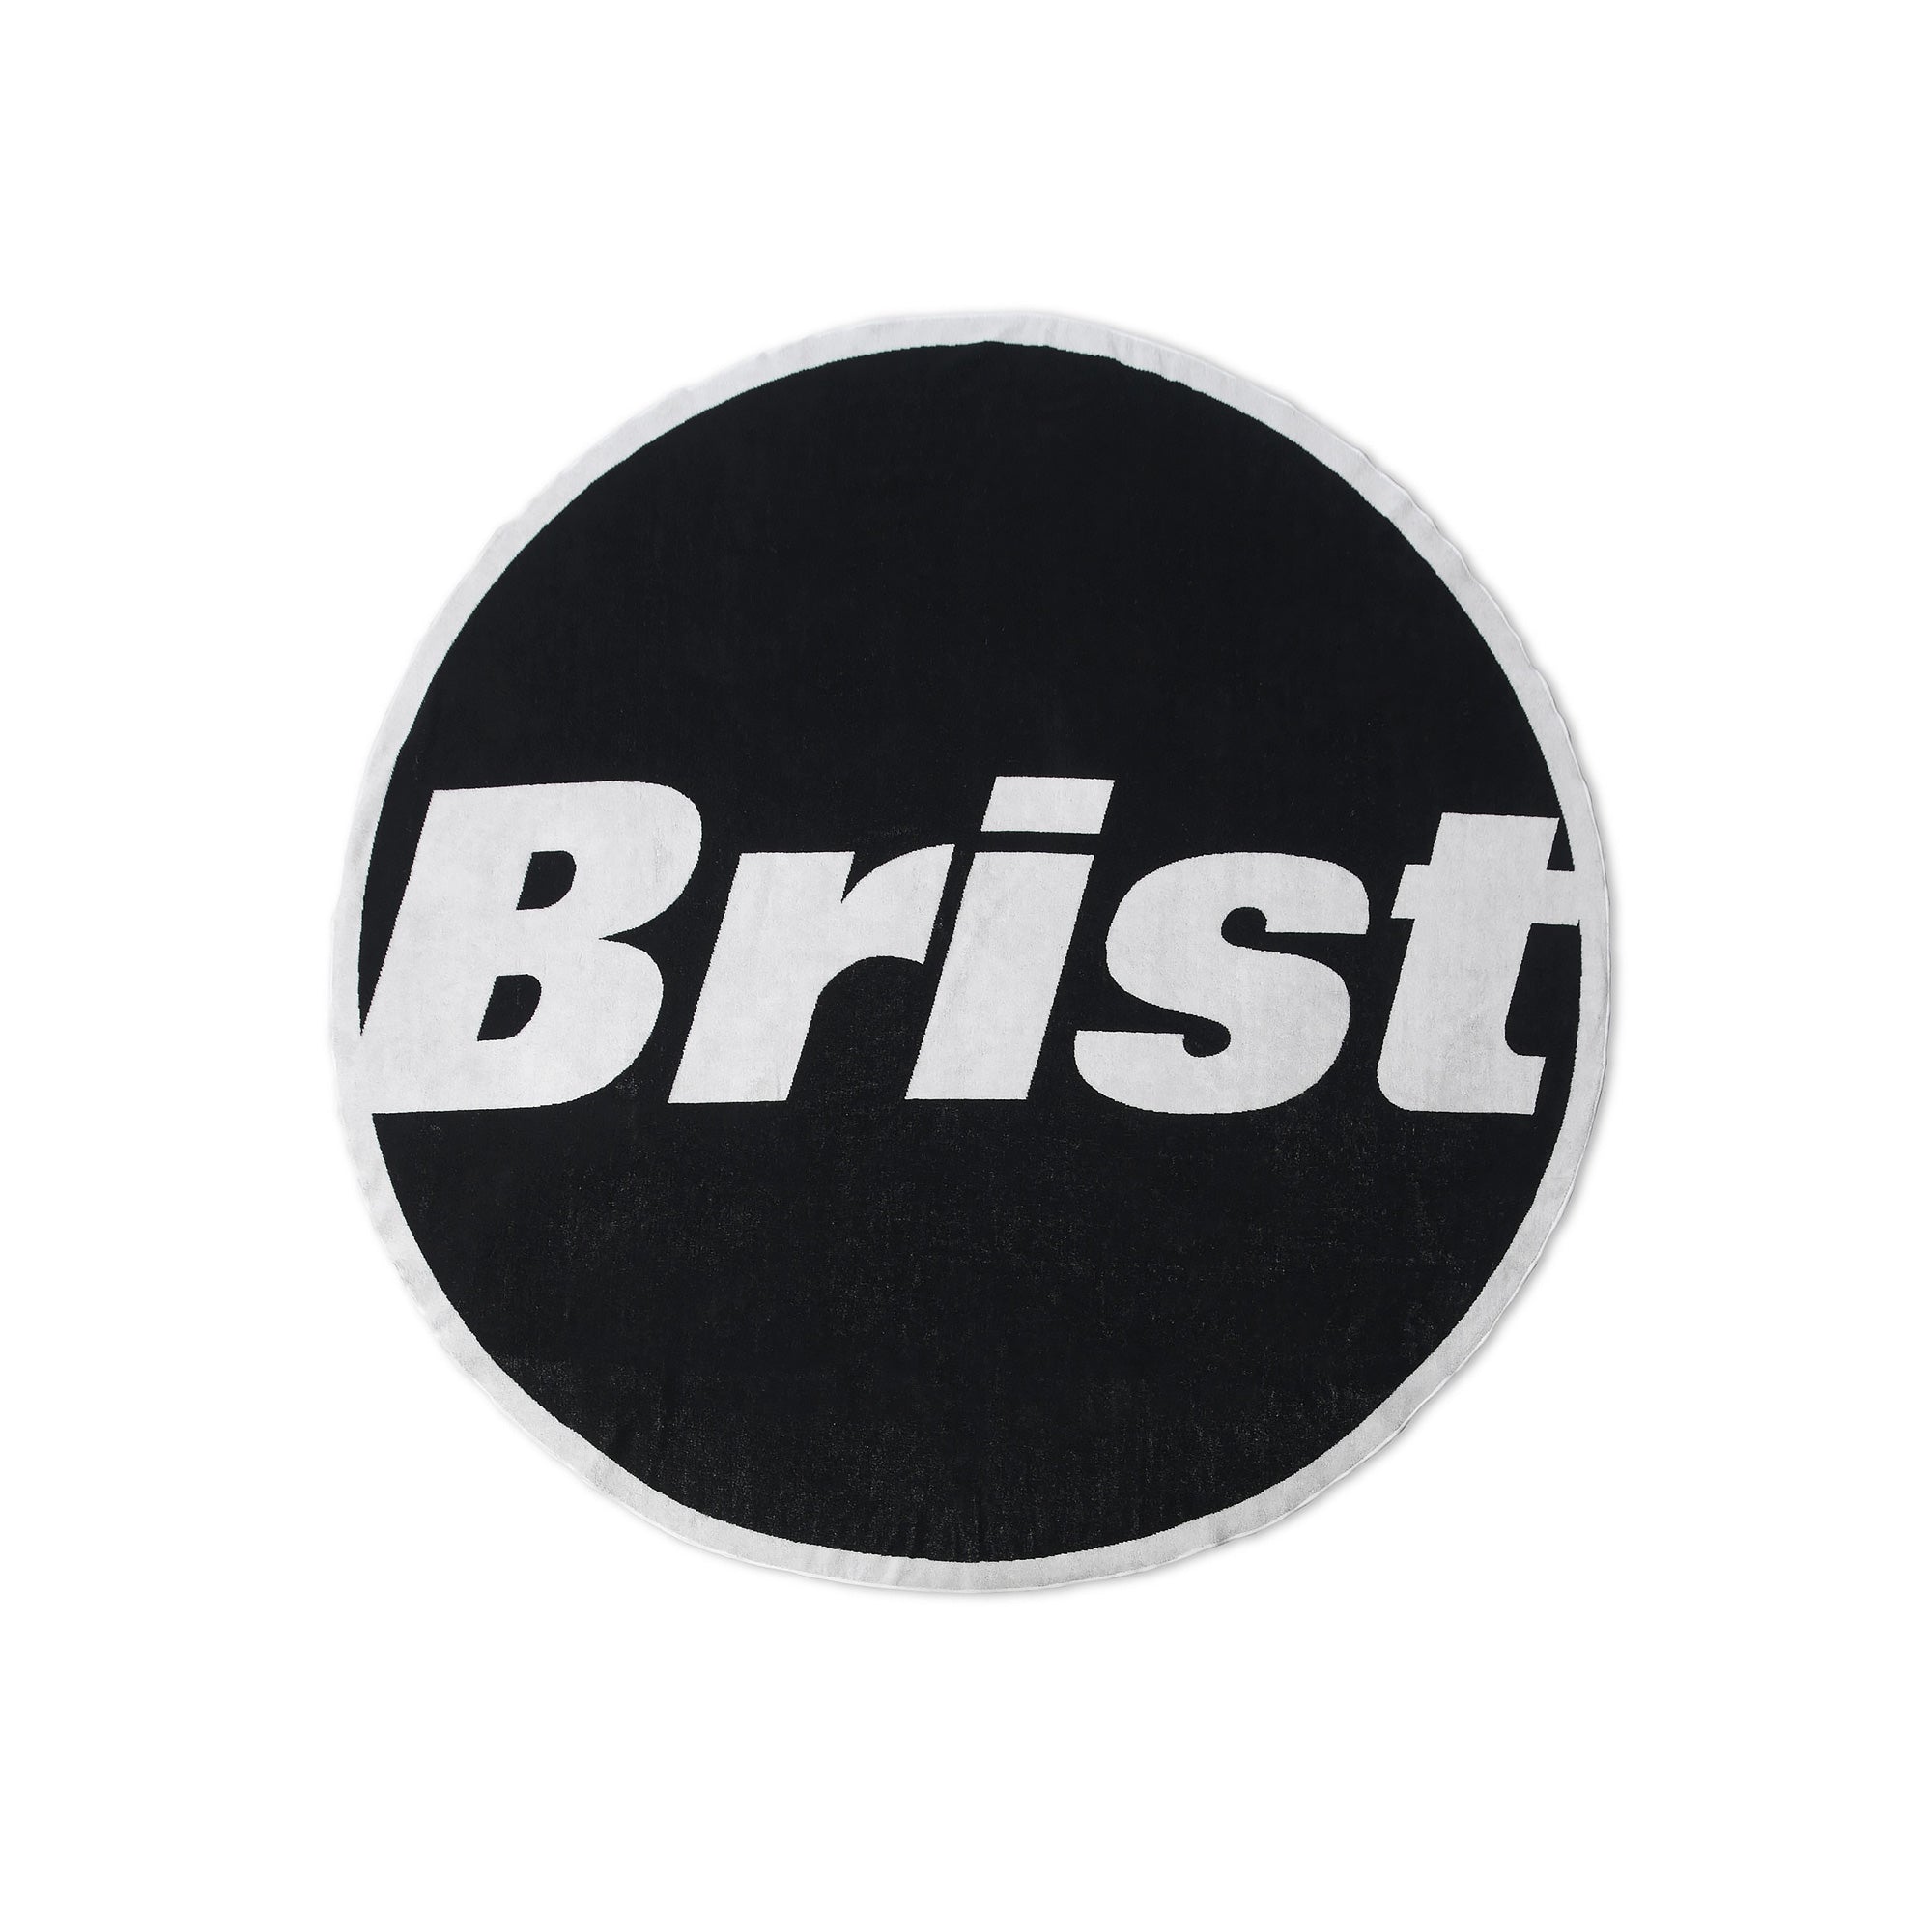 高評価特価 F.C.Real Bristol BIG TOWEL BLANKET sOjk2-m25409717289